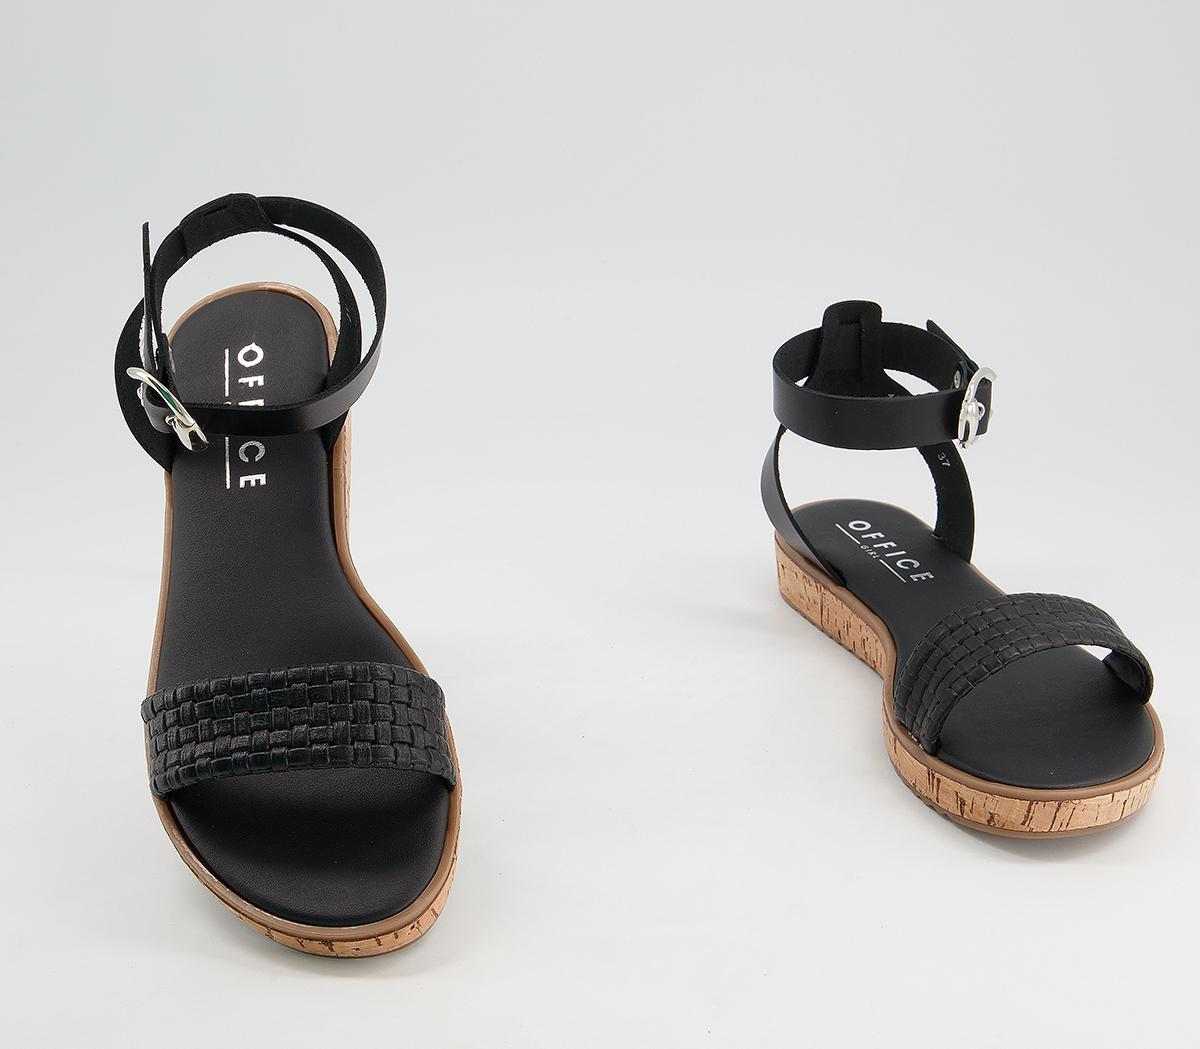 OFFICE Sympathy Cork Sole Sandals Black Leather Woven - Women’s Sandals